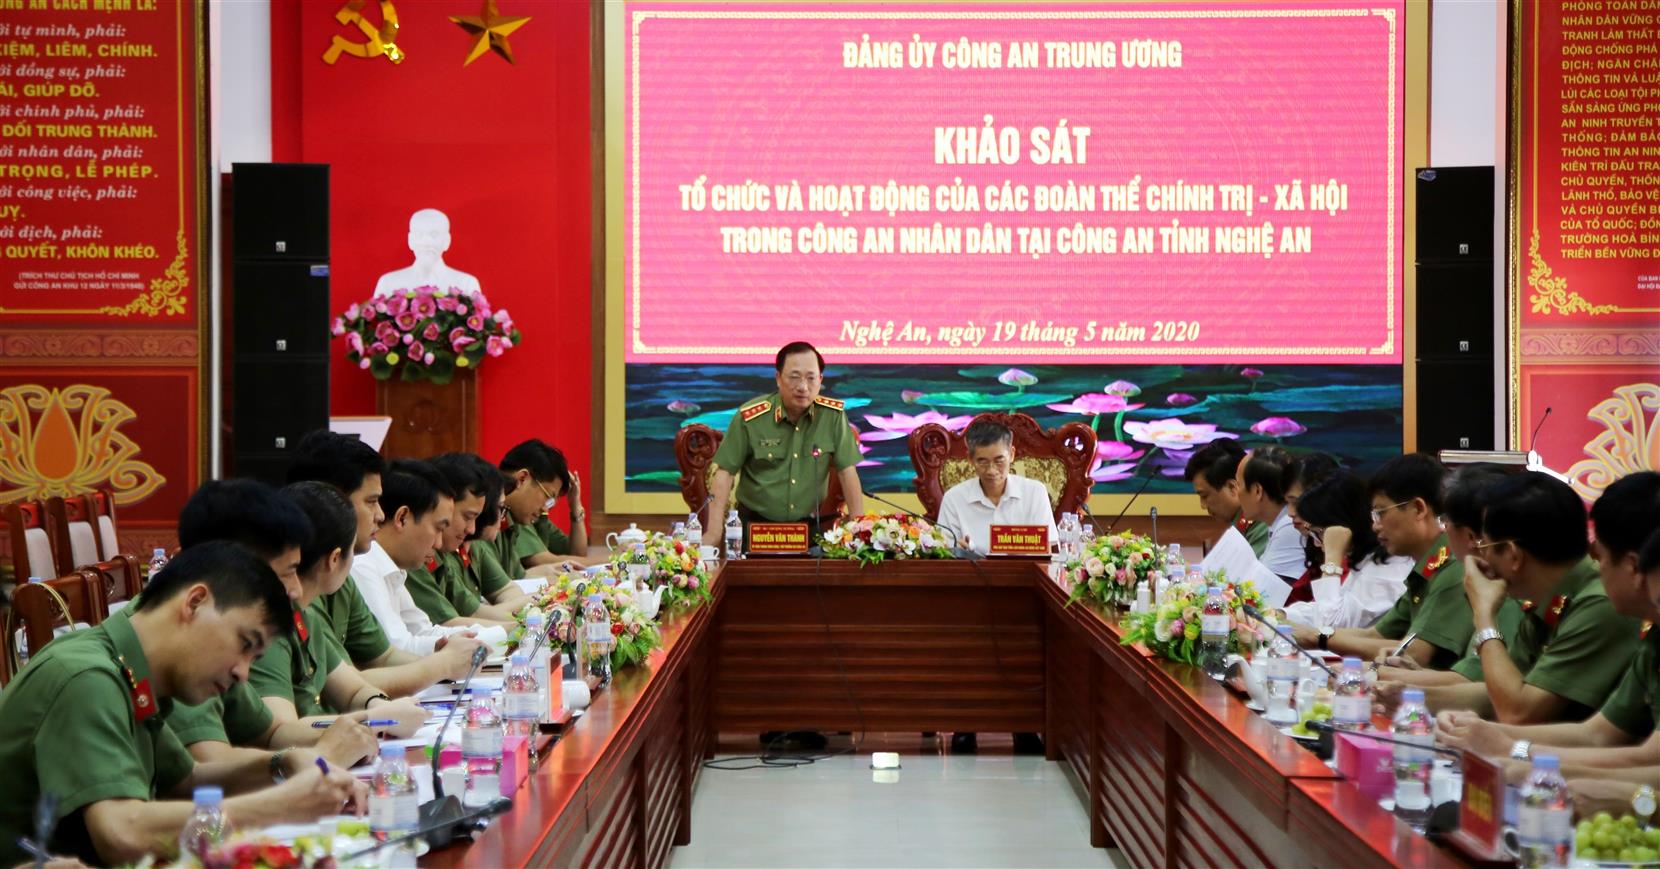 Đồng chí Thượng tướng Nguyễn Văn Thành phát biểu chỉ đạo tại buổi khảo sát